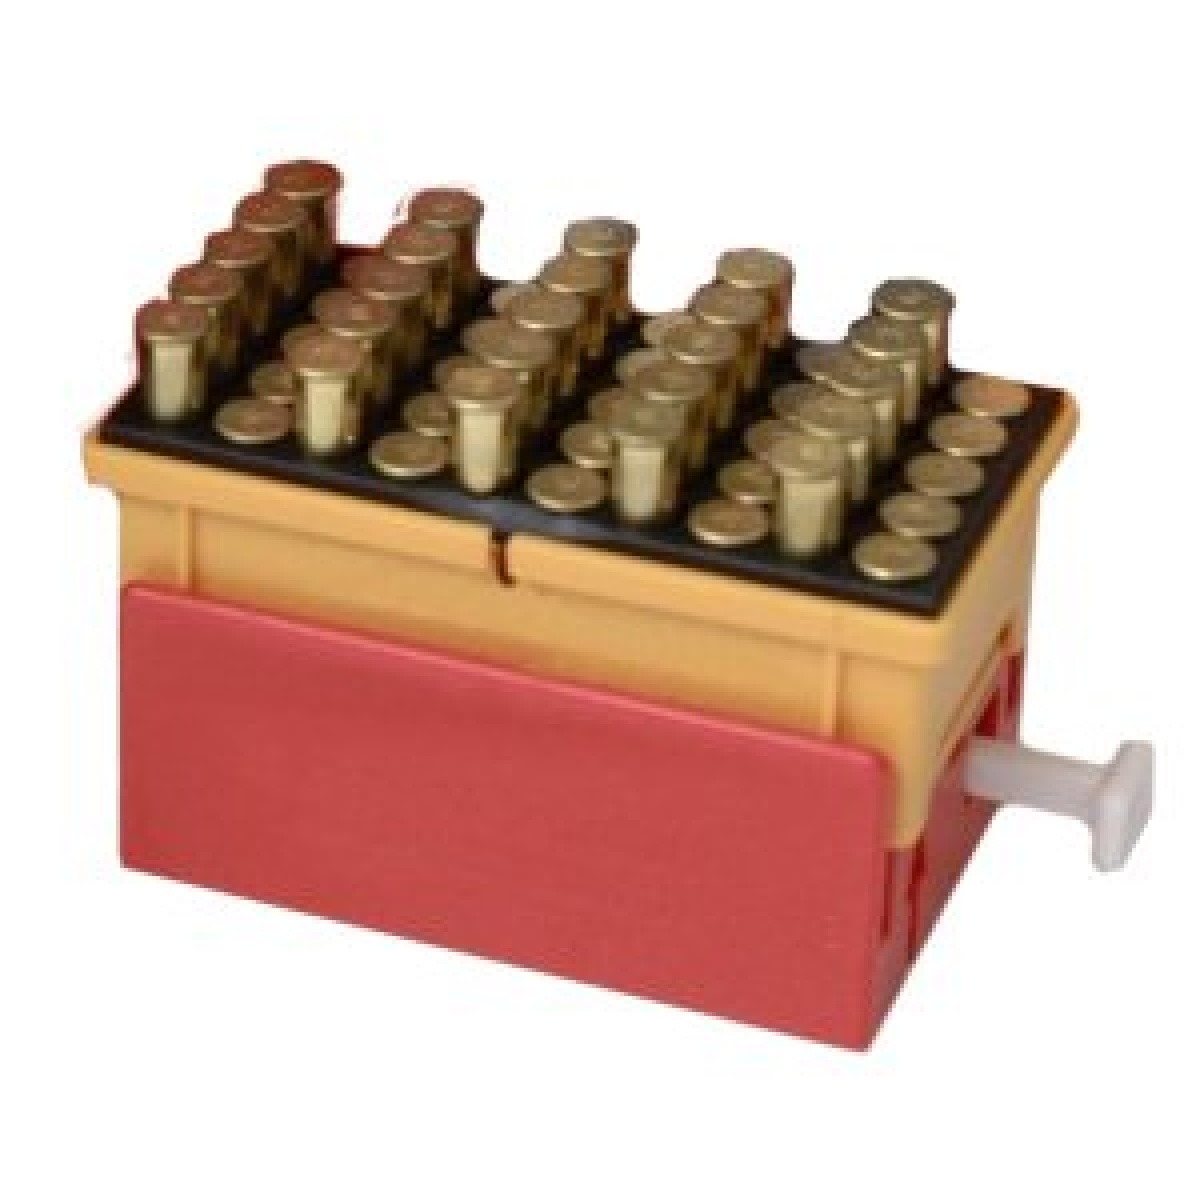 The Cartridge Rack Kit